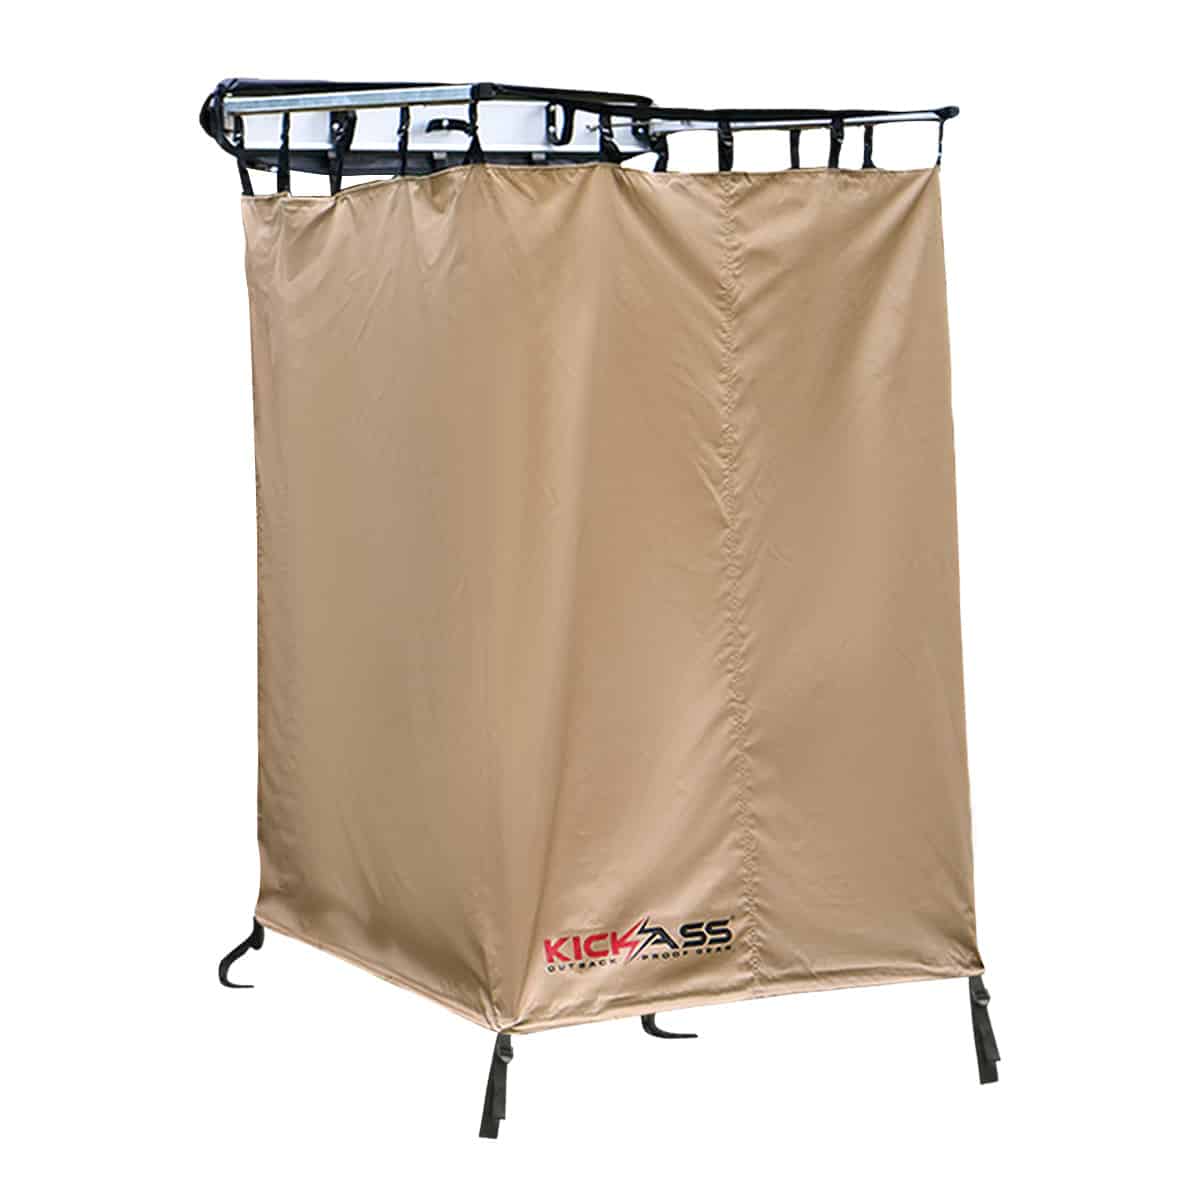 KickAss Shower Tent & Gas Hot Water System